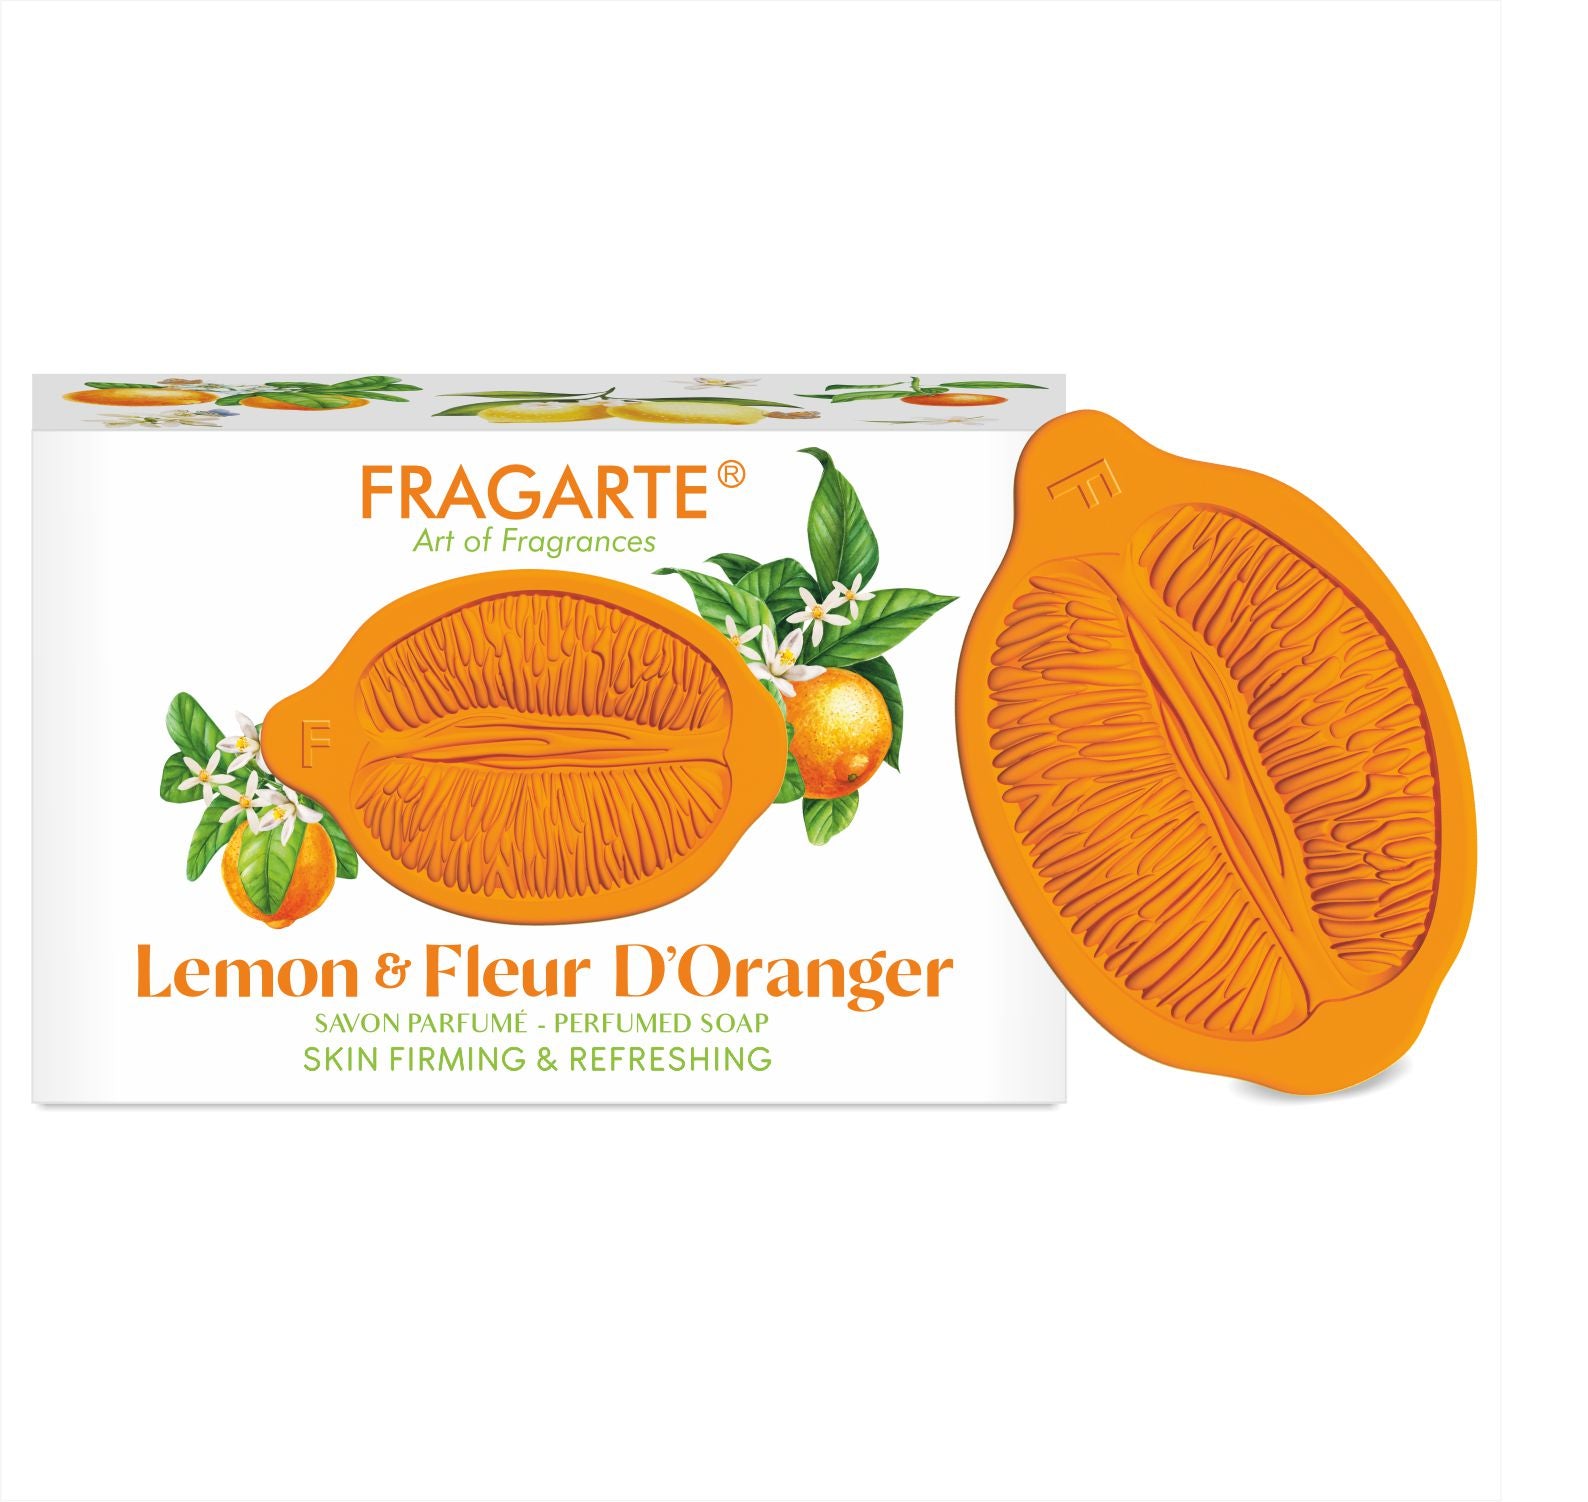 Fragarte Lemon & Fleur D’oranger